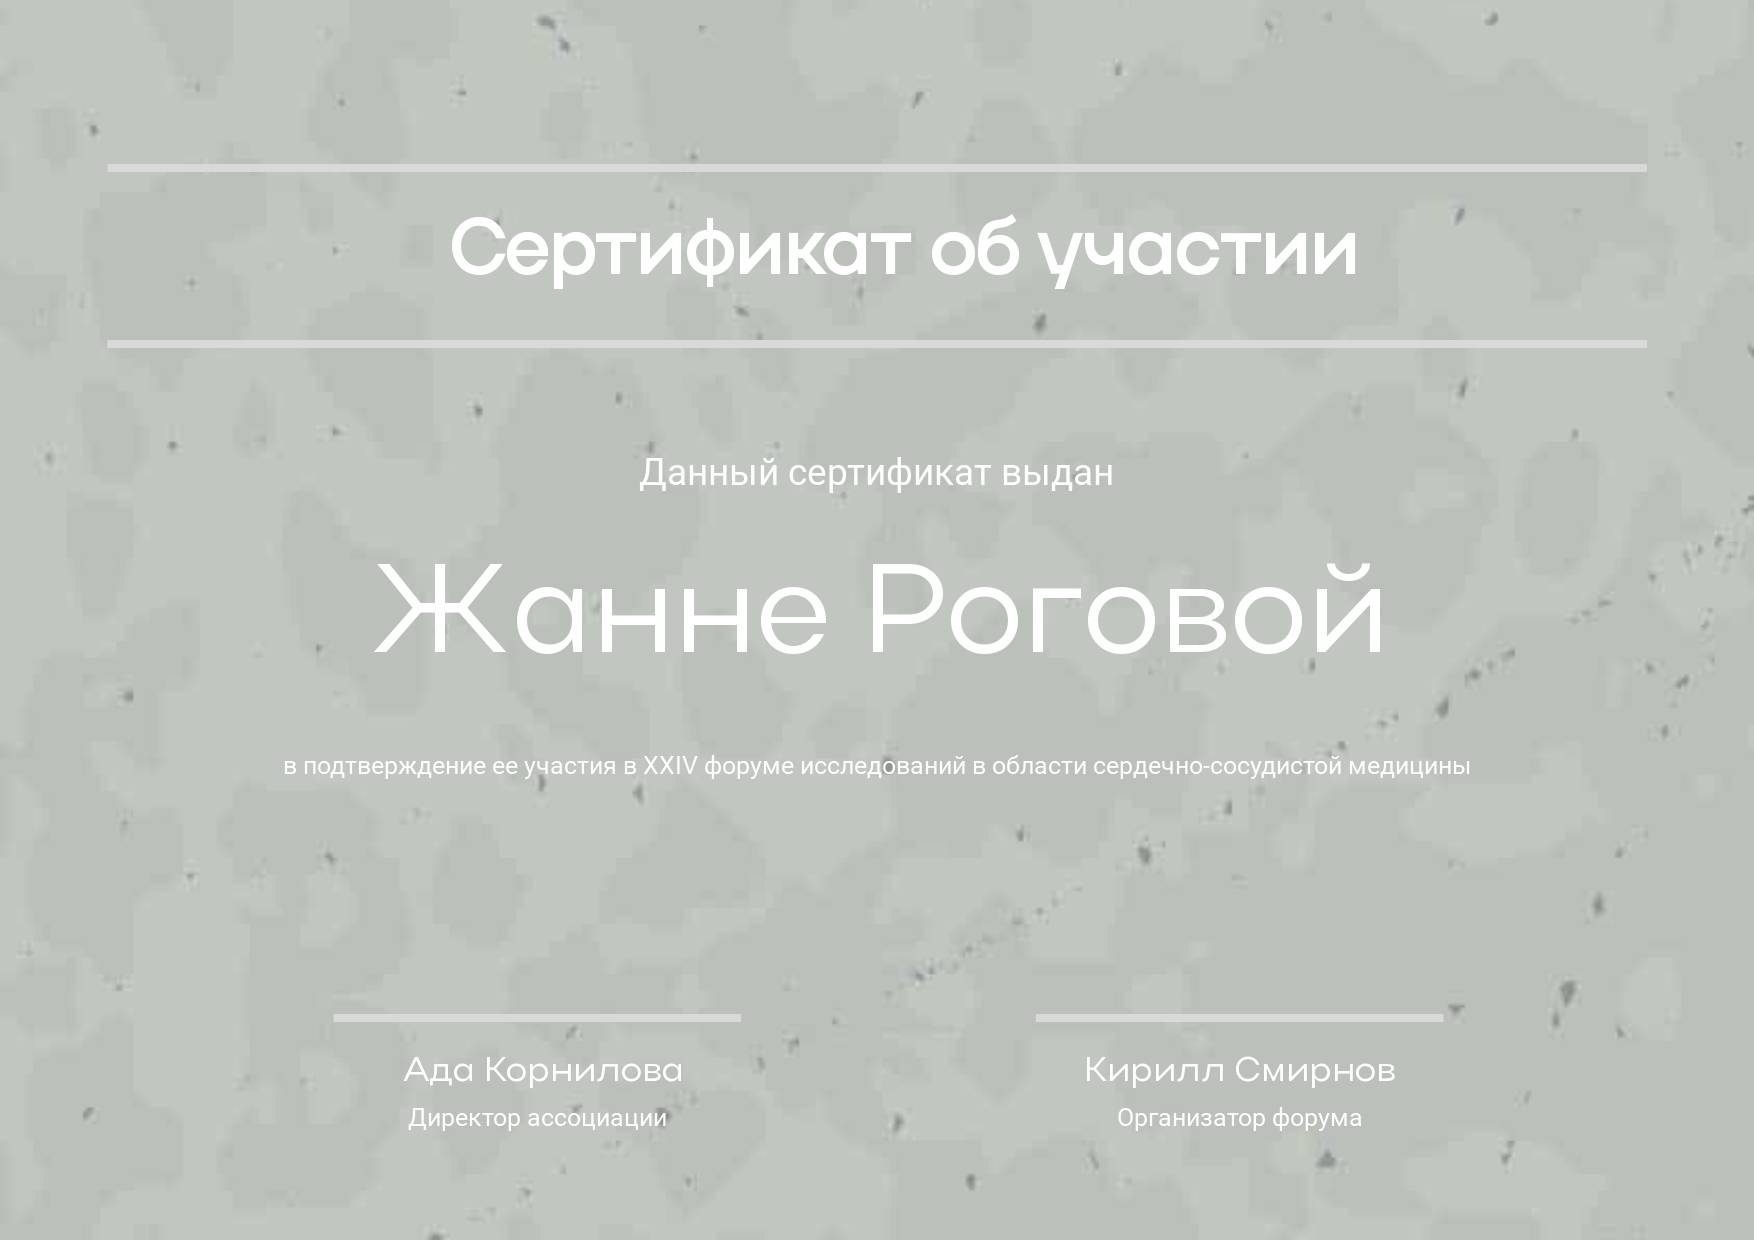 Шаблон сертификата с мраморным темно-серым фоном и крупным белым шрифтом